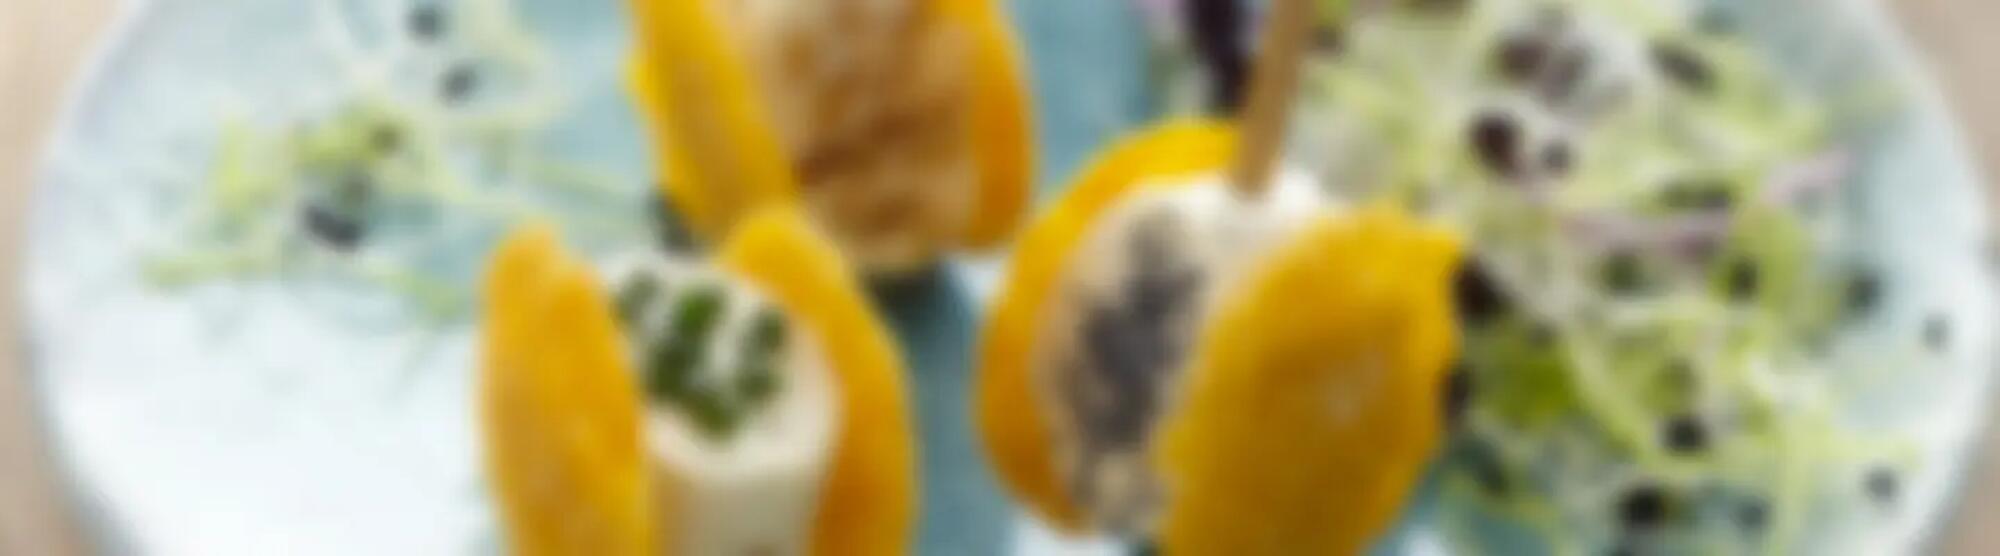 Recette : Bouchée croquante mimolette & fromage frais